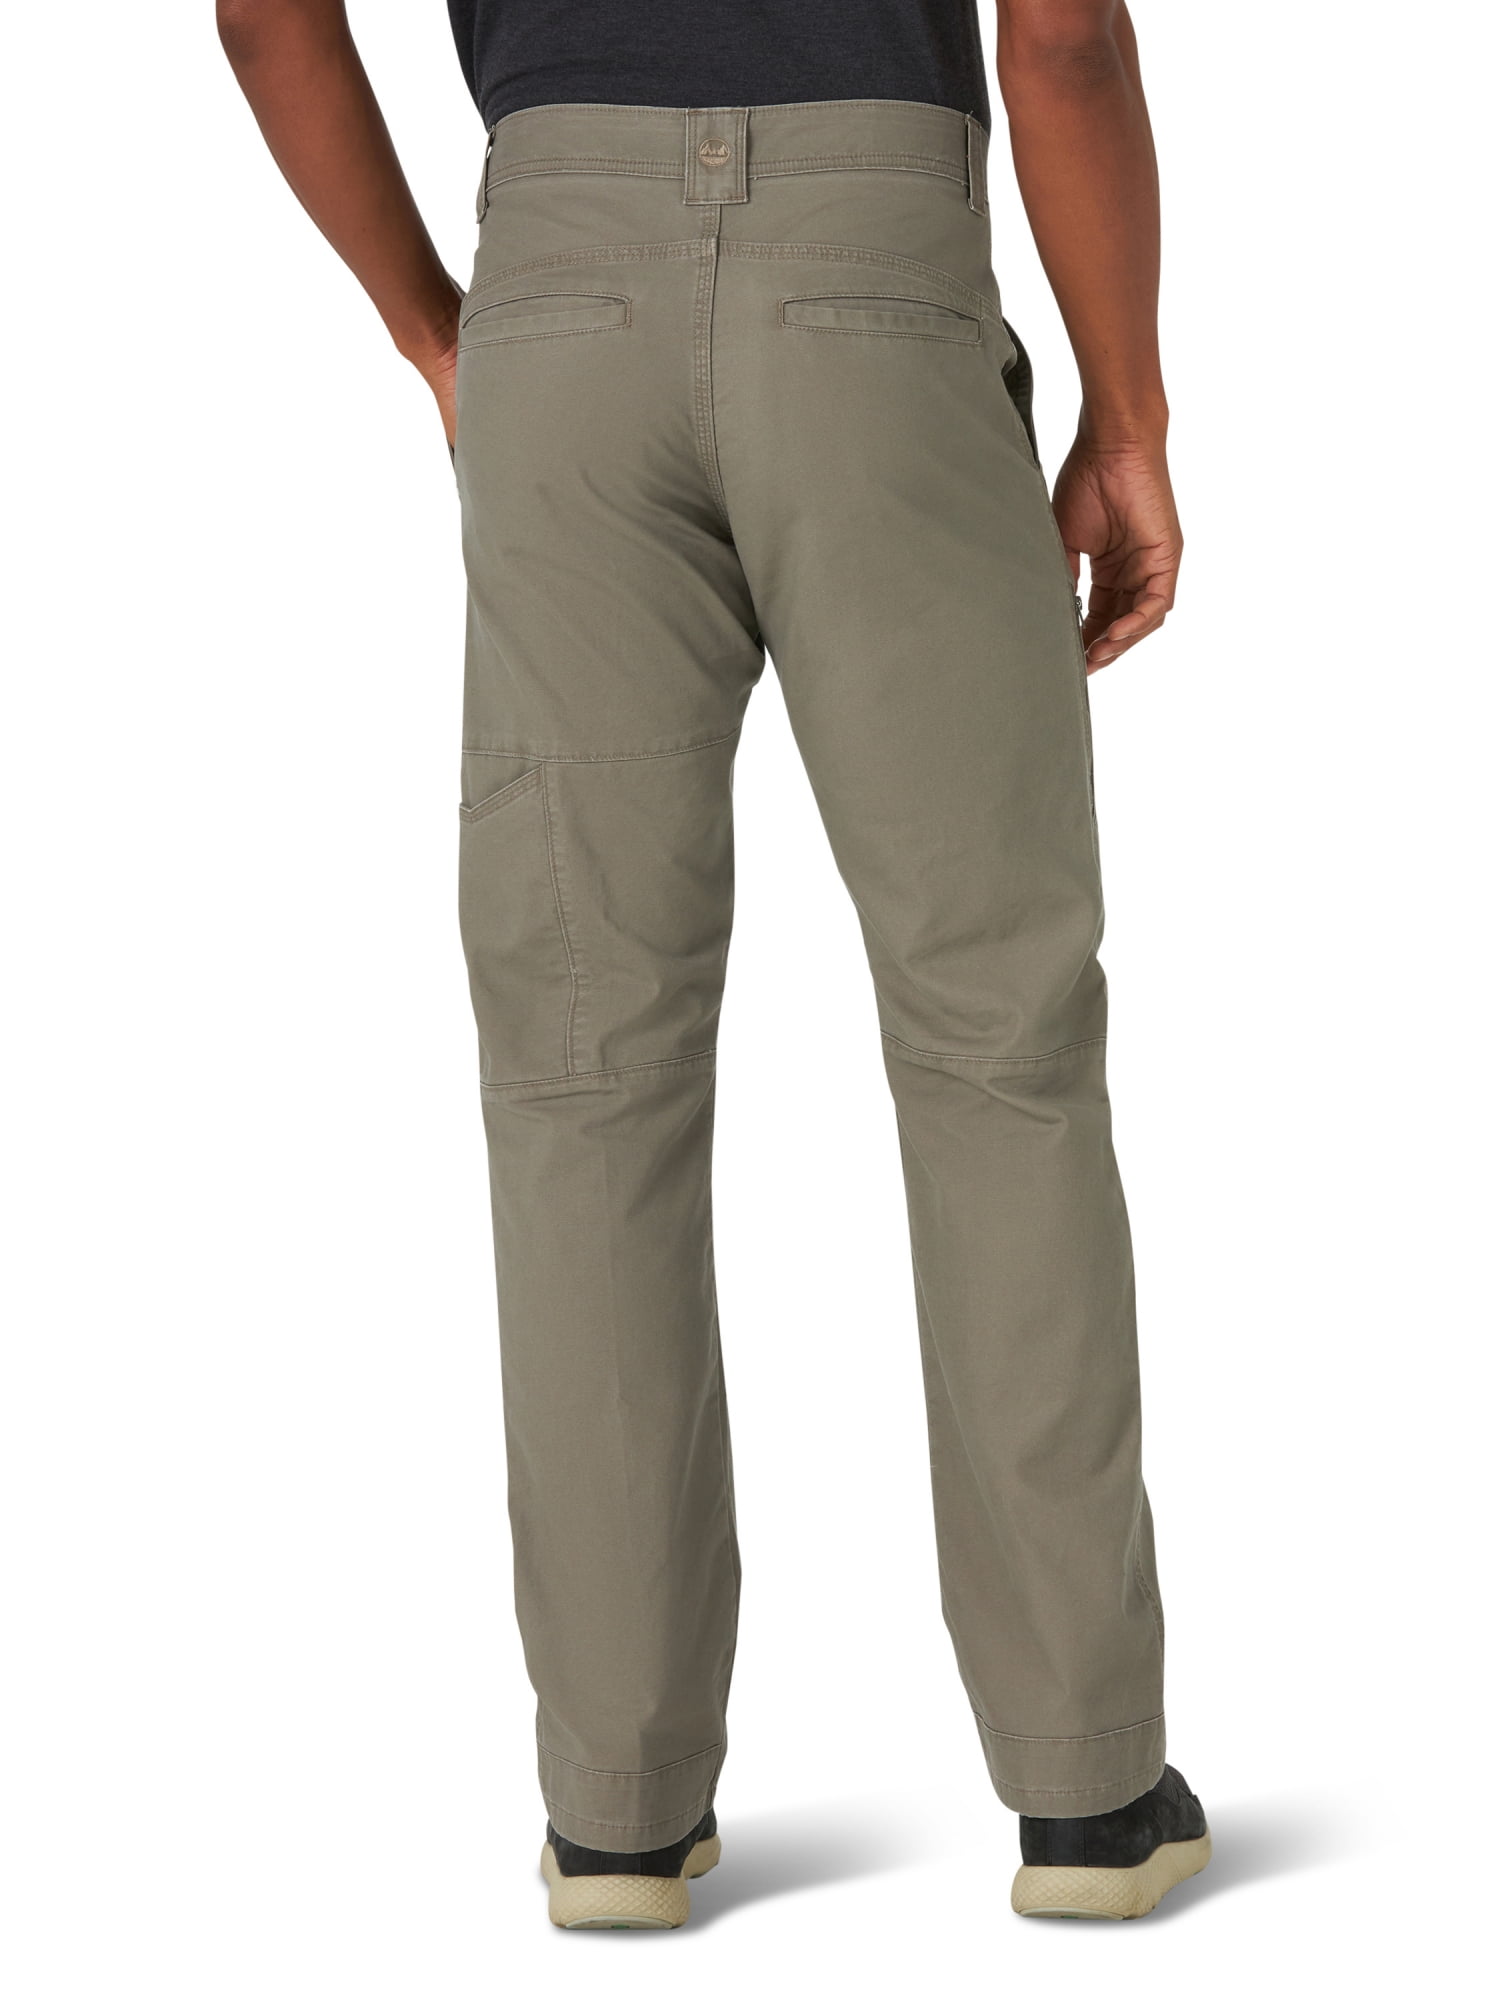 Wrangler Regular Fit Straight-Leg Utility Pant (Men's), 1 Count, 1 Pack -  